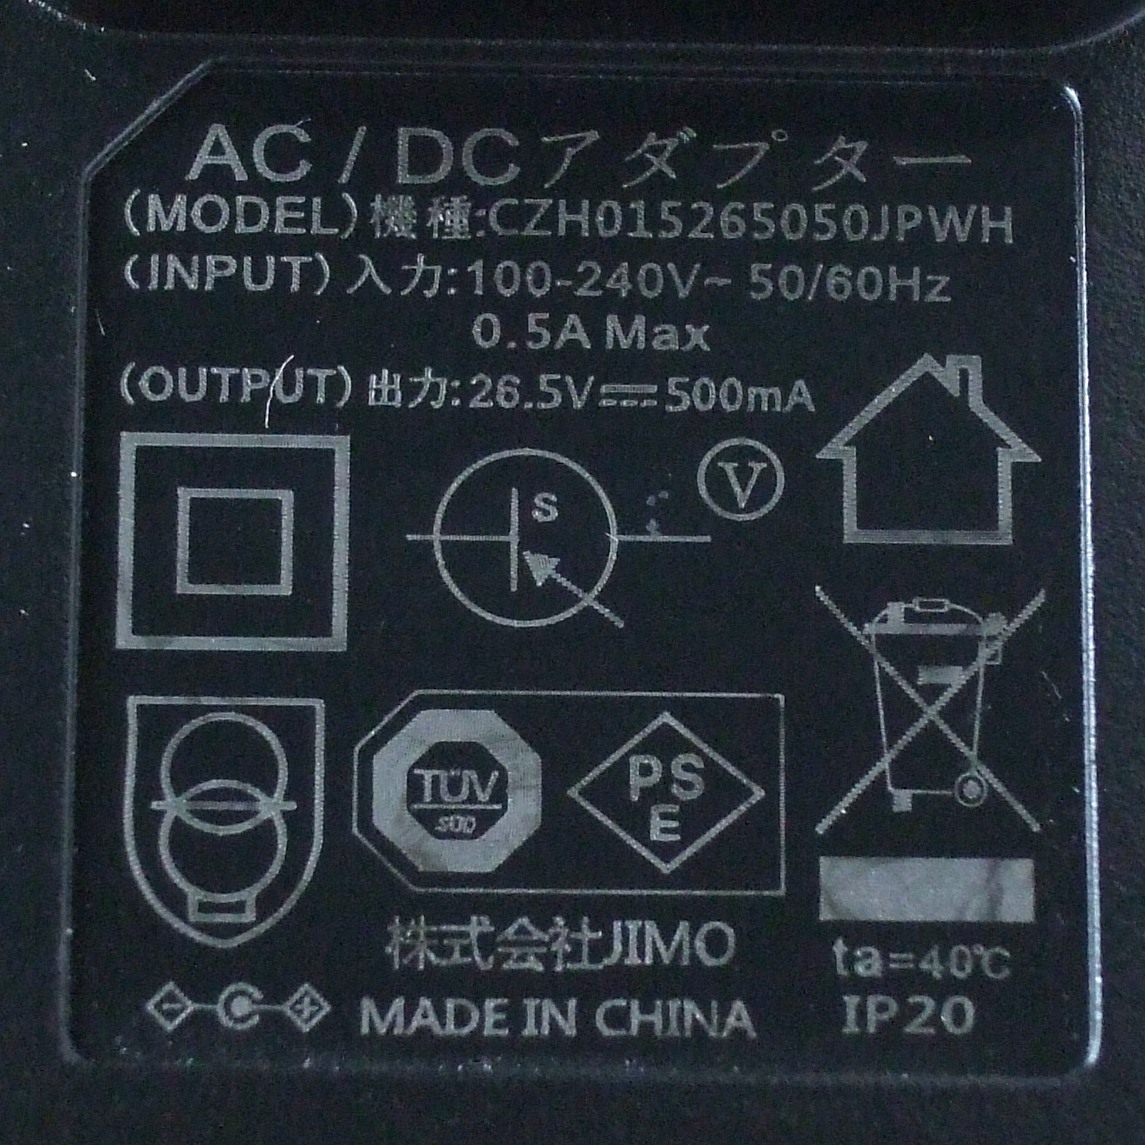 即決！ 株式会社 JIMO ACアダプター 充電器 CZH015265050JPWH センタープラス 26.5V 500mA 0.5A_画像2